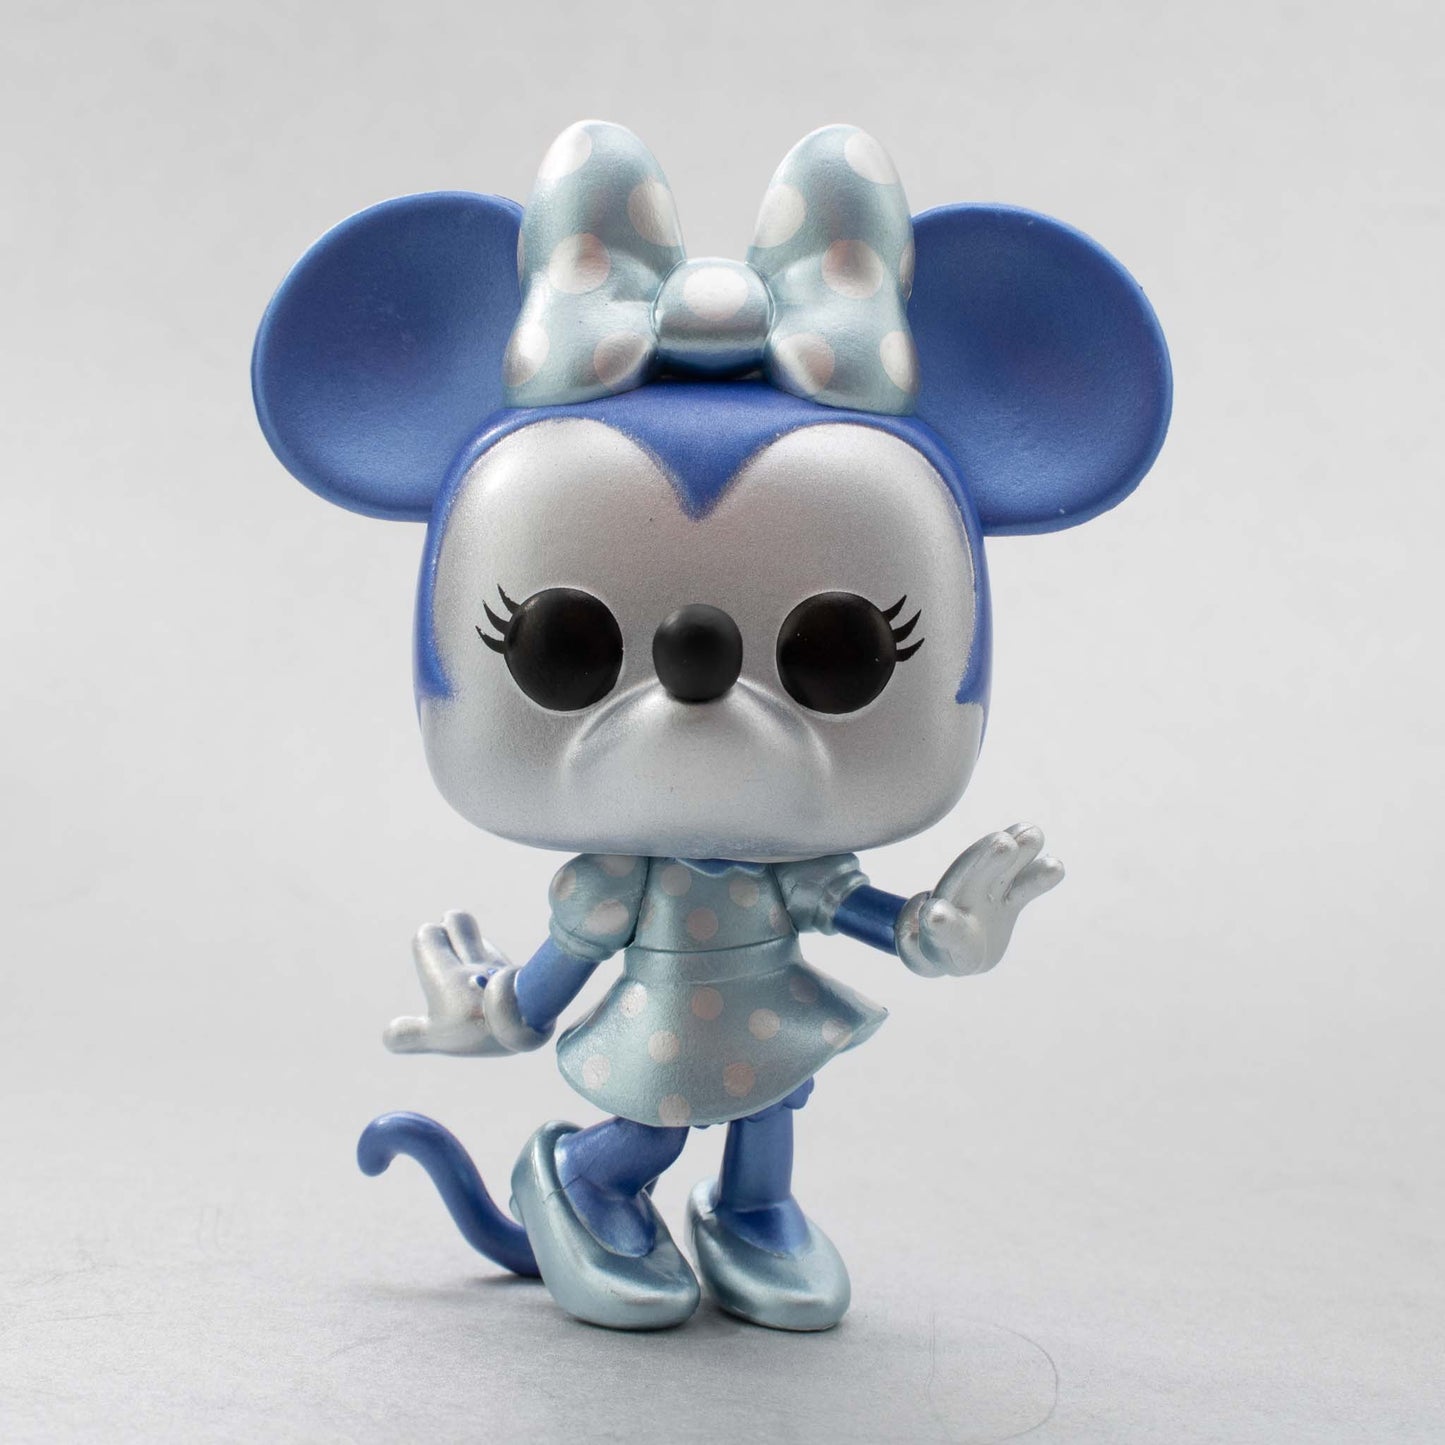 Funko POP Disney Make A Wish Minnie Mouse Metallic Multicolor